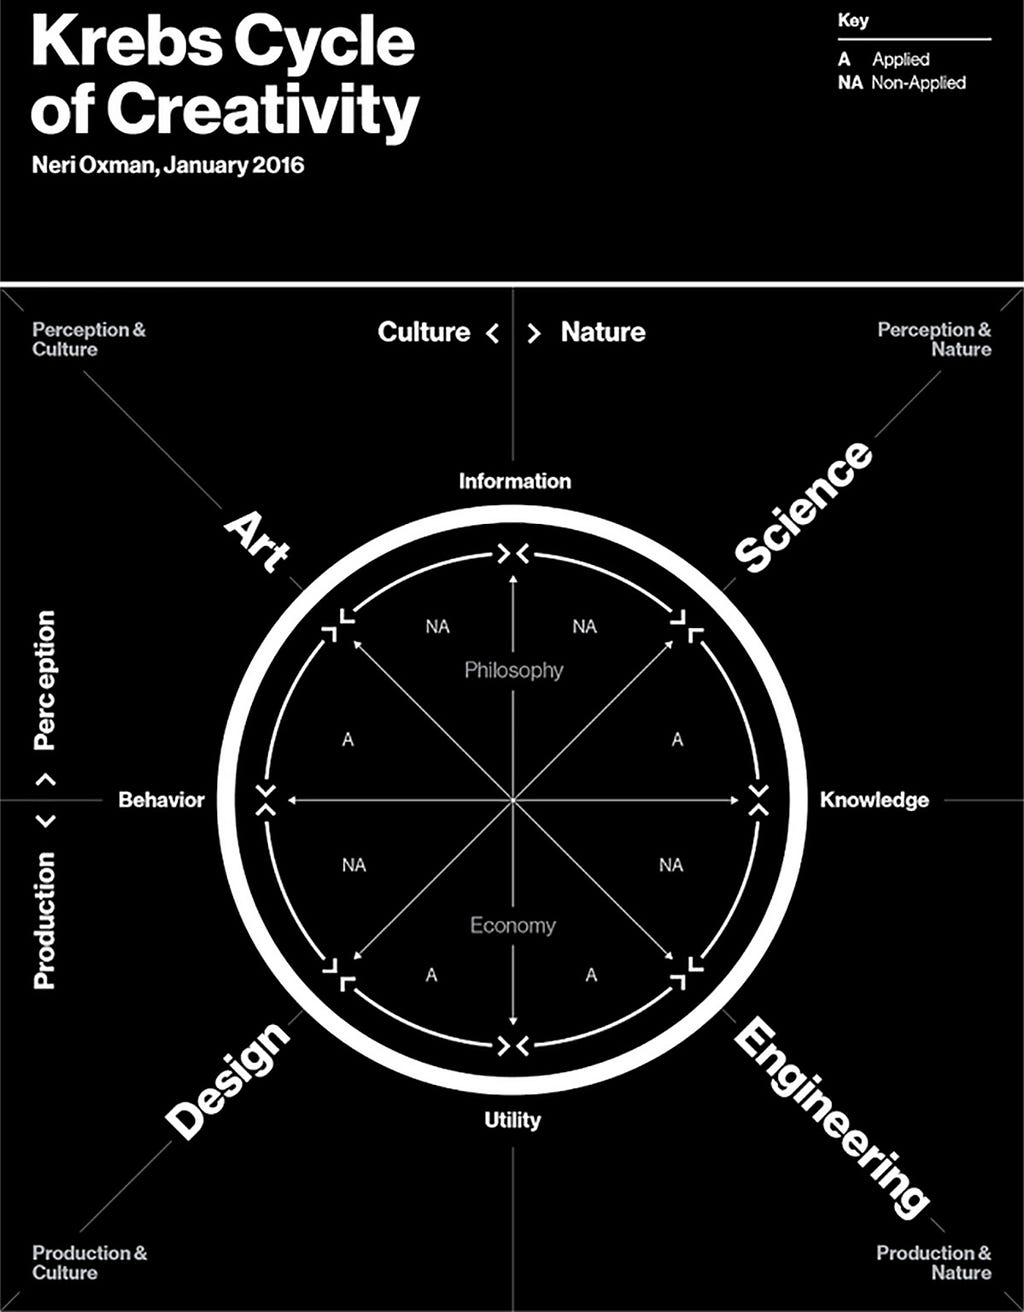 Cycle de Krebs de la créativité